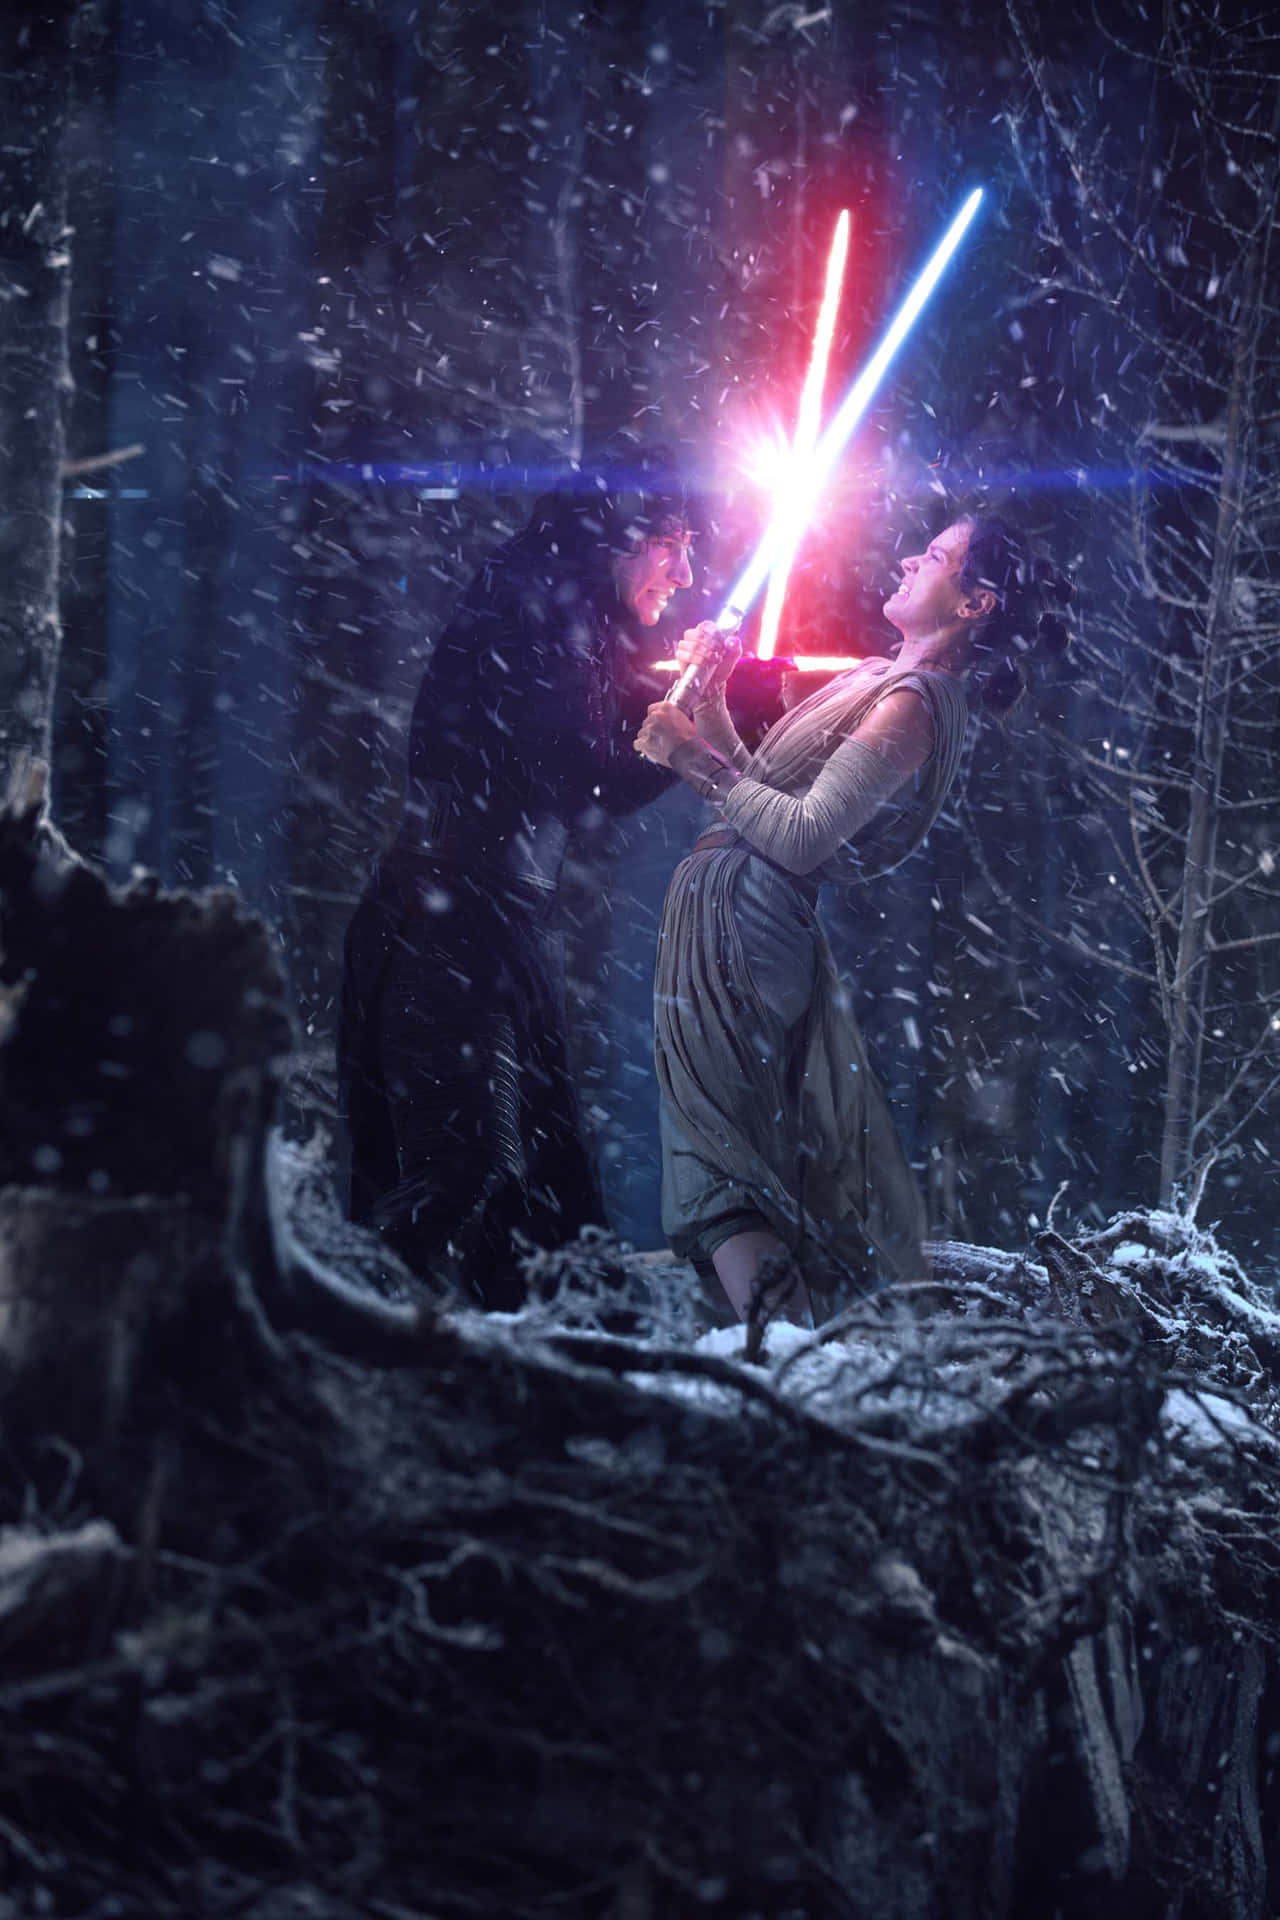 Immaginedi Star Wars Rey E Kylo Ren In Battaglia Con Le Spade Laser.